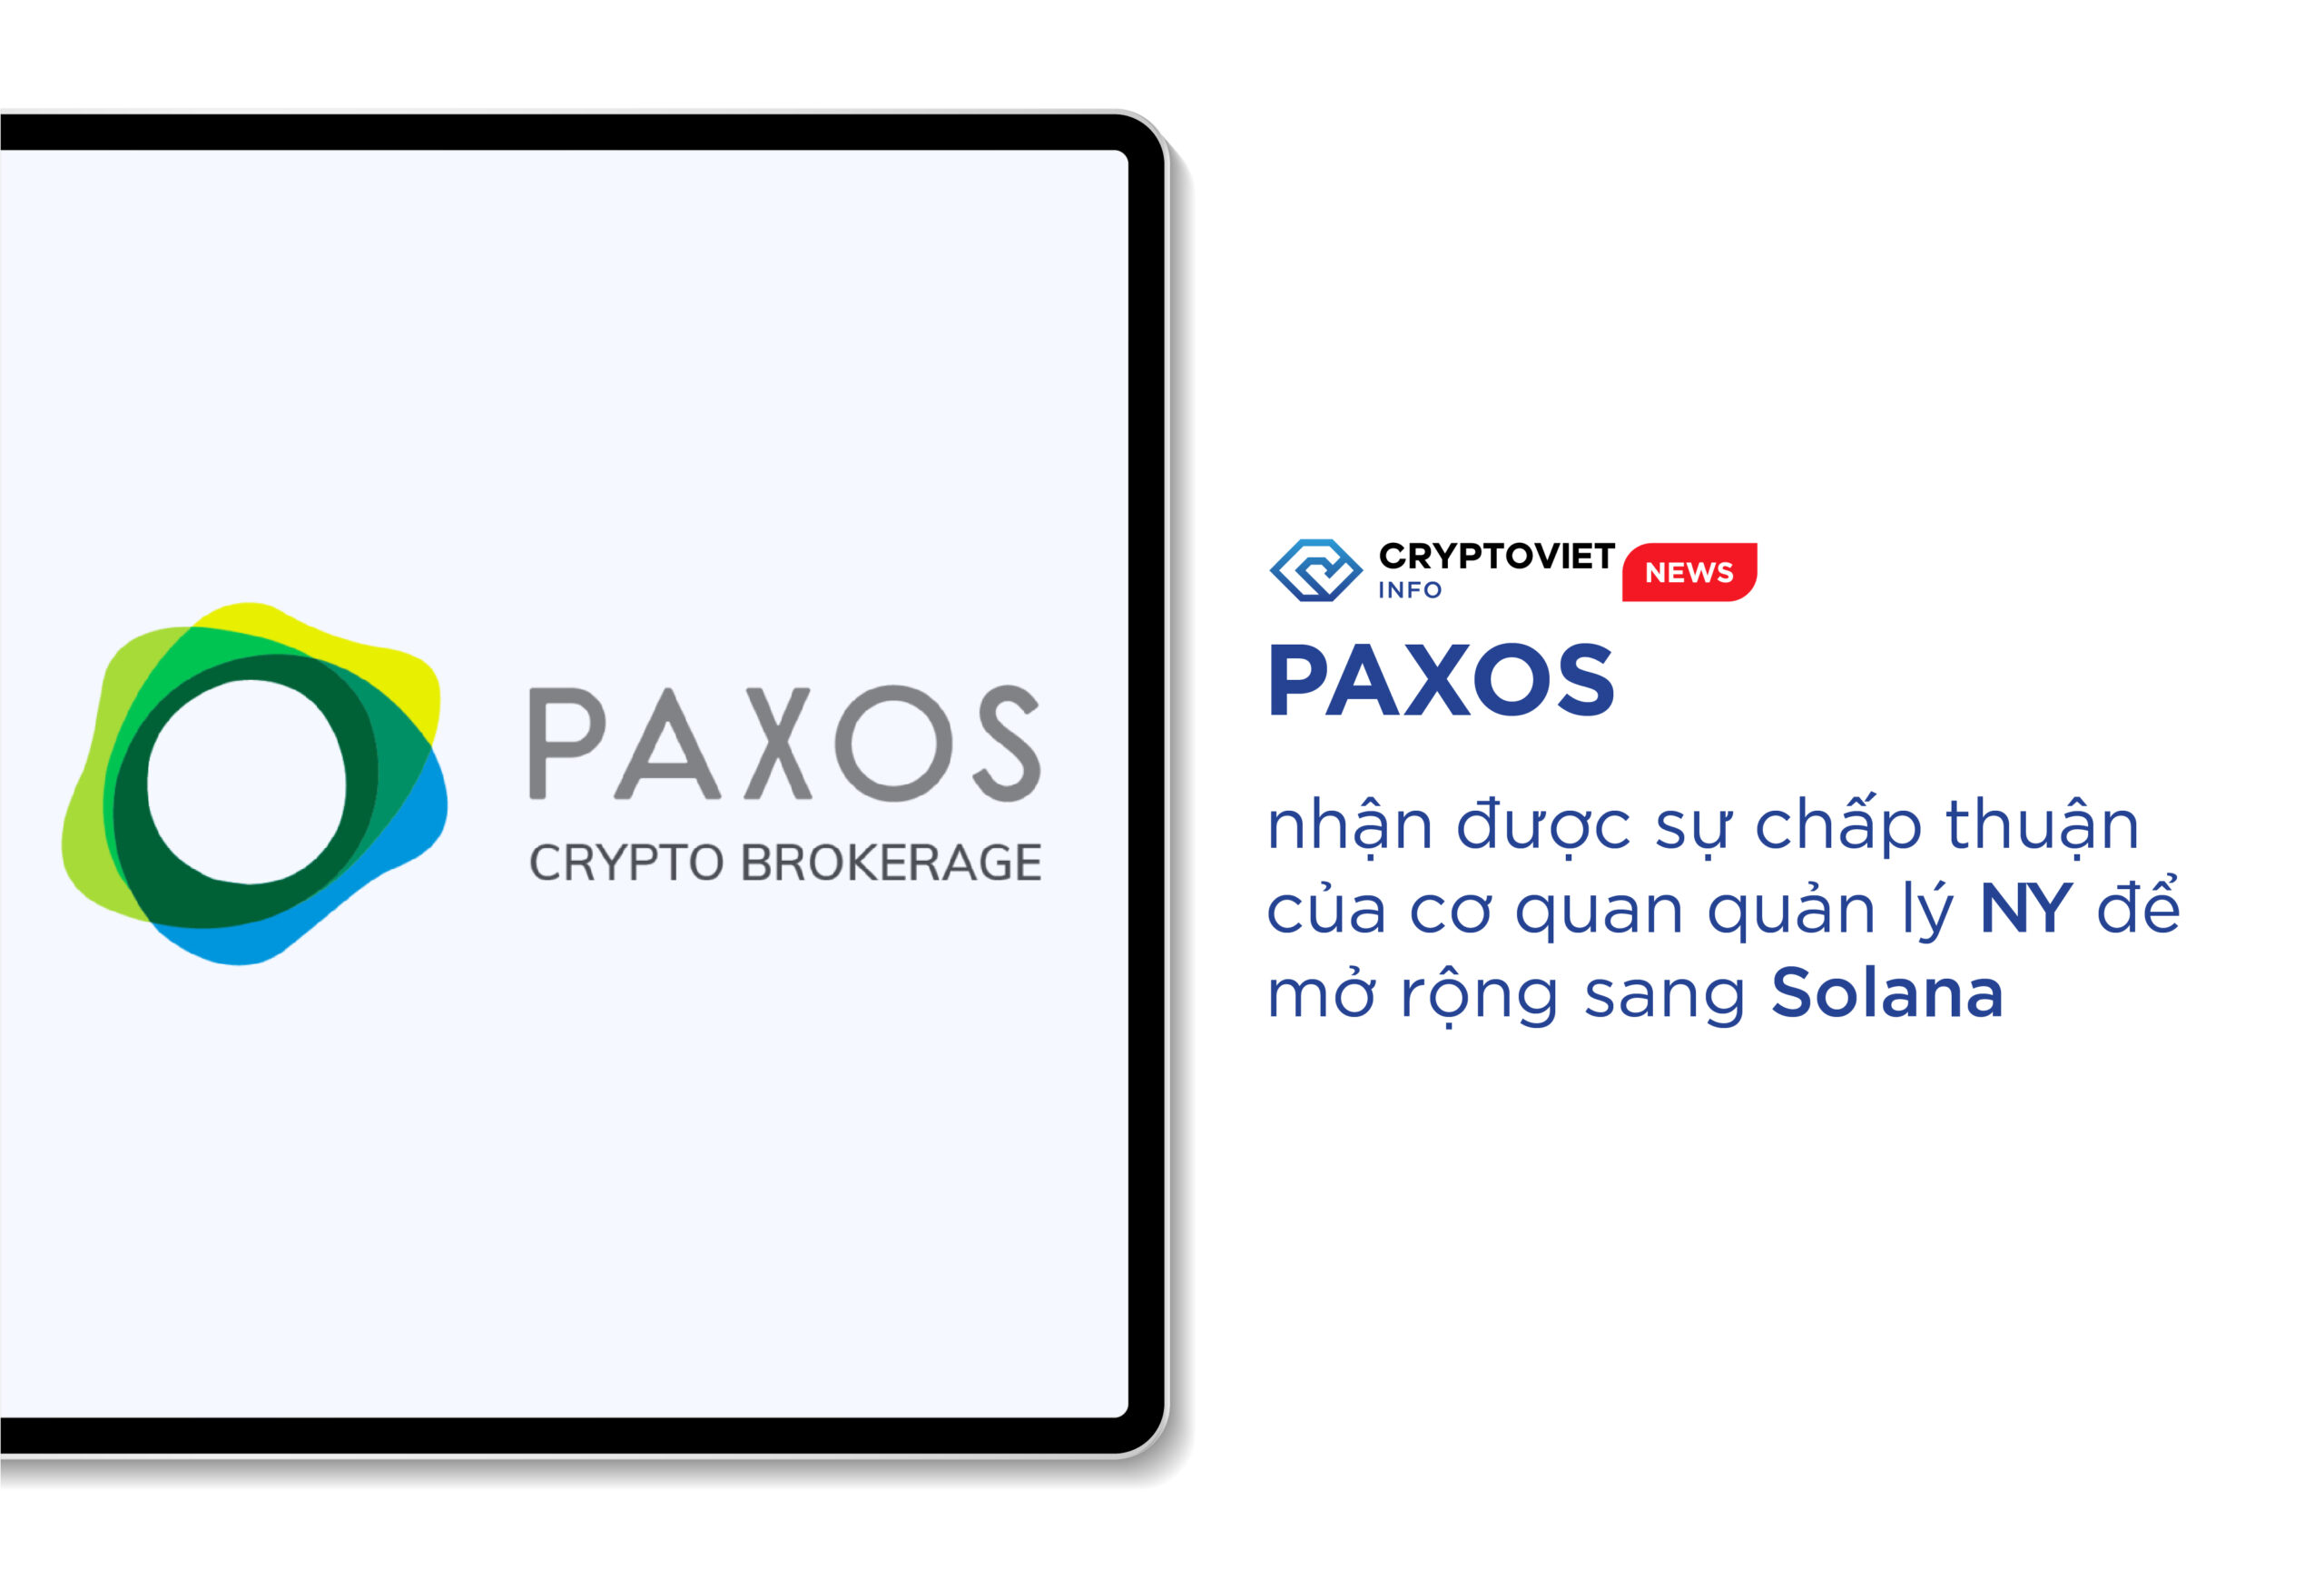 Paxos nhận được sự chấp thuận của cơ quan quản lý NY để mở rộng sang Solana